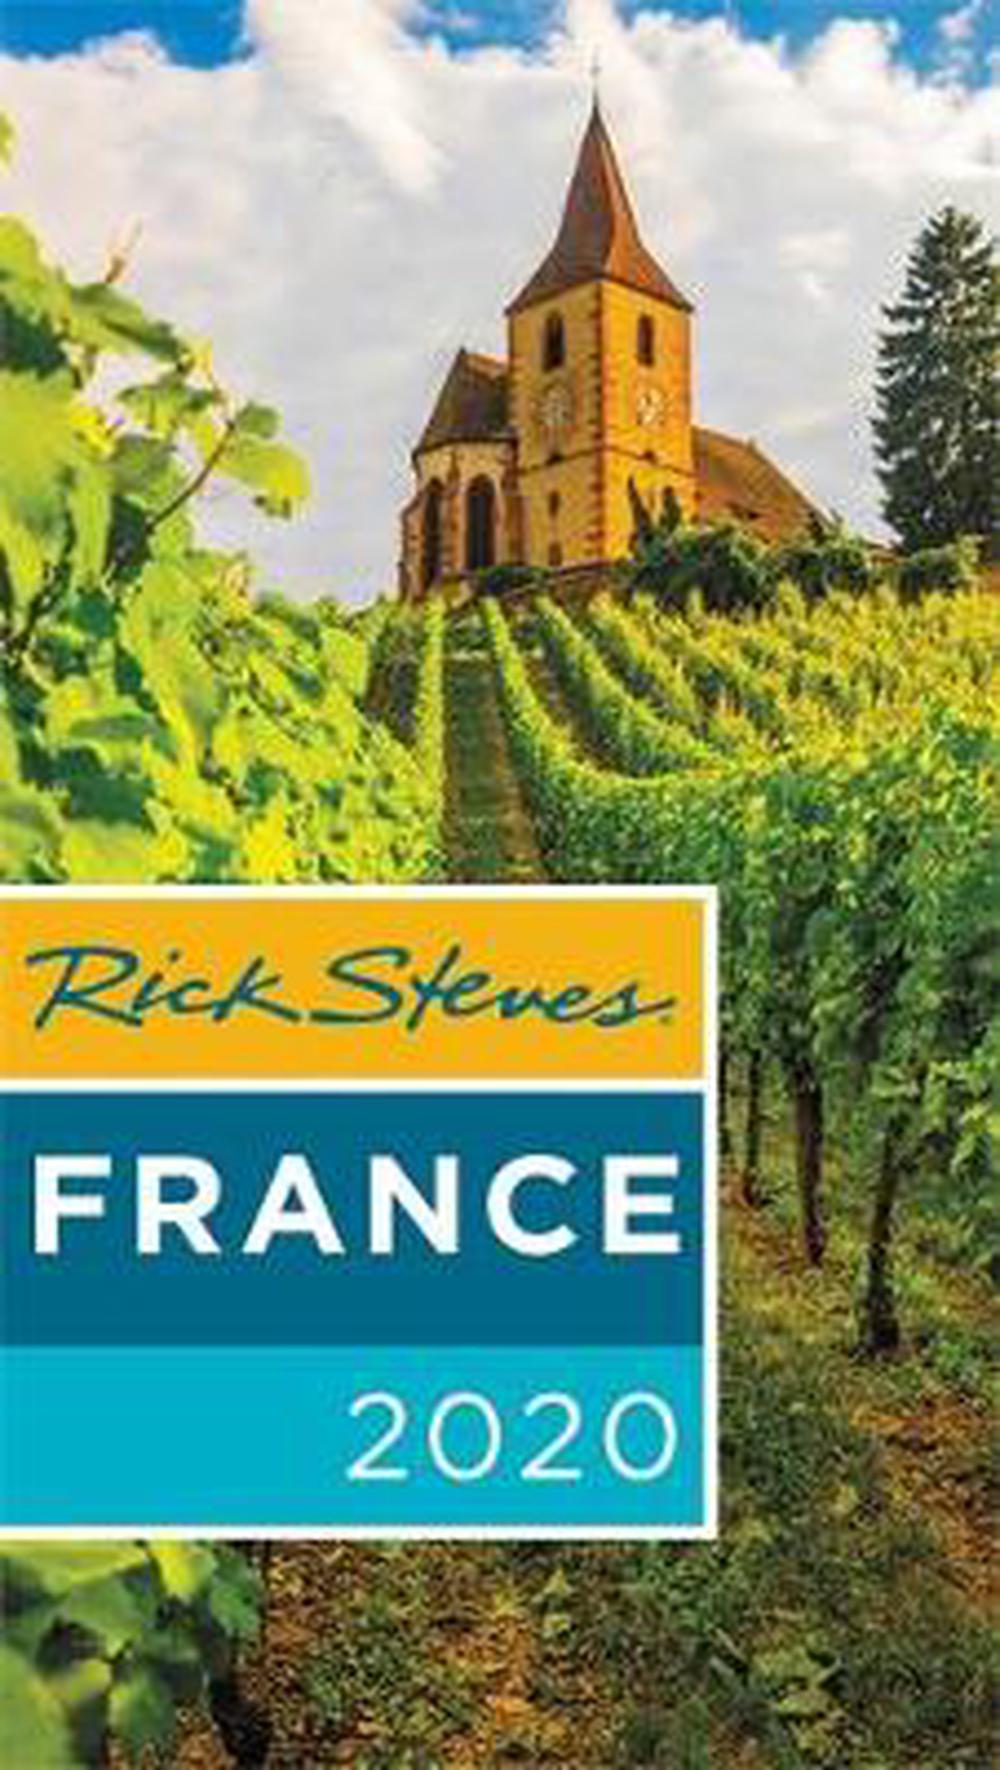 rick steves wine tours france